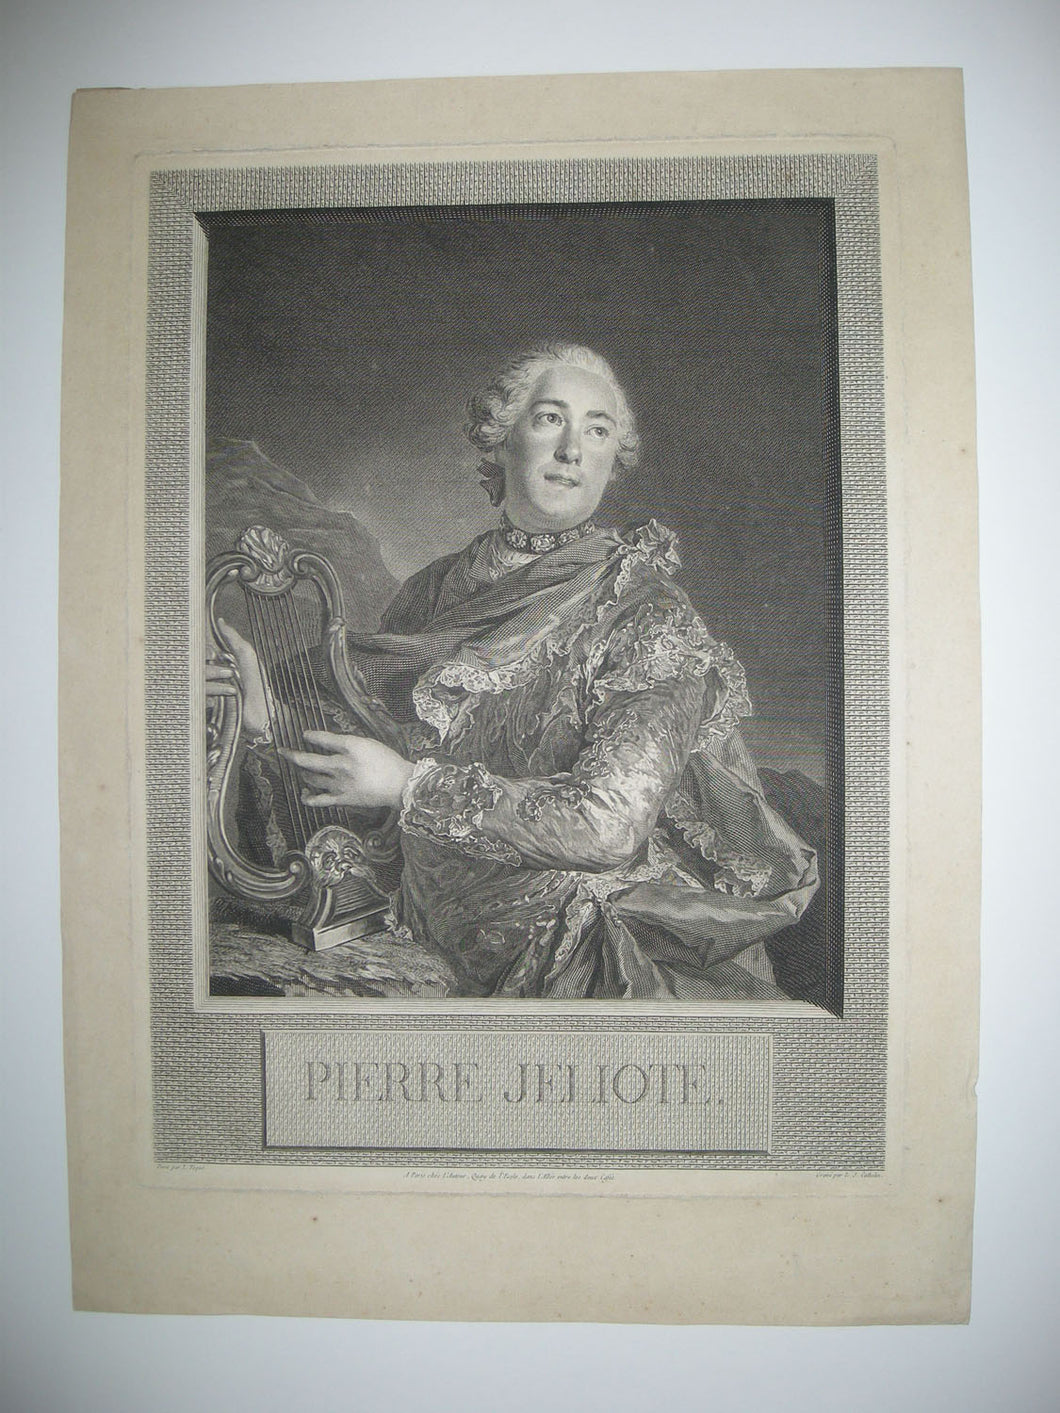 Pierre Jeliote (Pierre de Jélyotte, né en 1713 à Lasseube et mort en 1797 à Estos, près d'Oloron, fut un célèbre chanteur lyrique et compositeur français). 